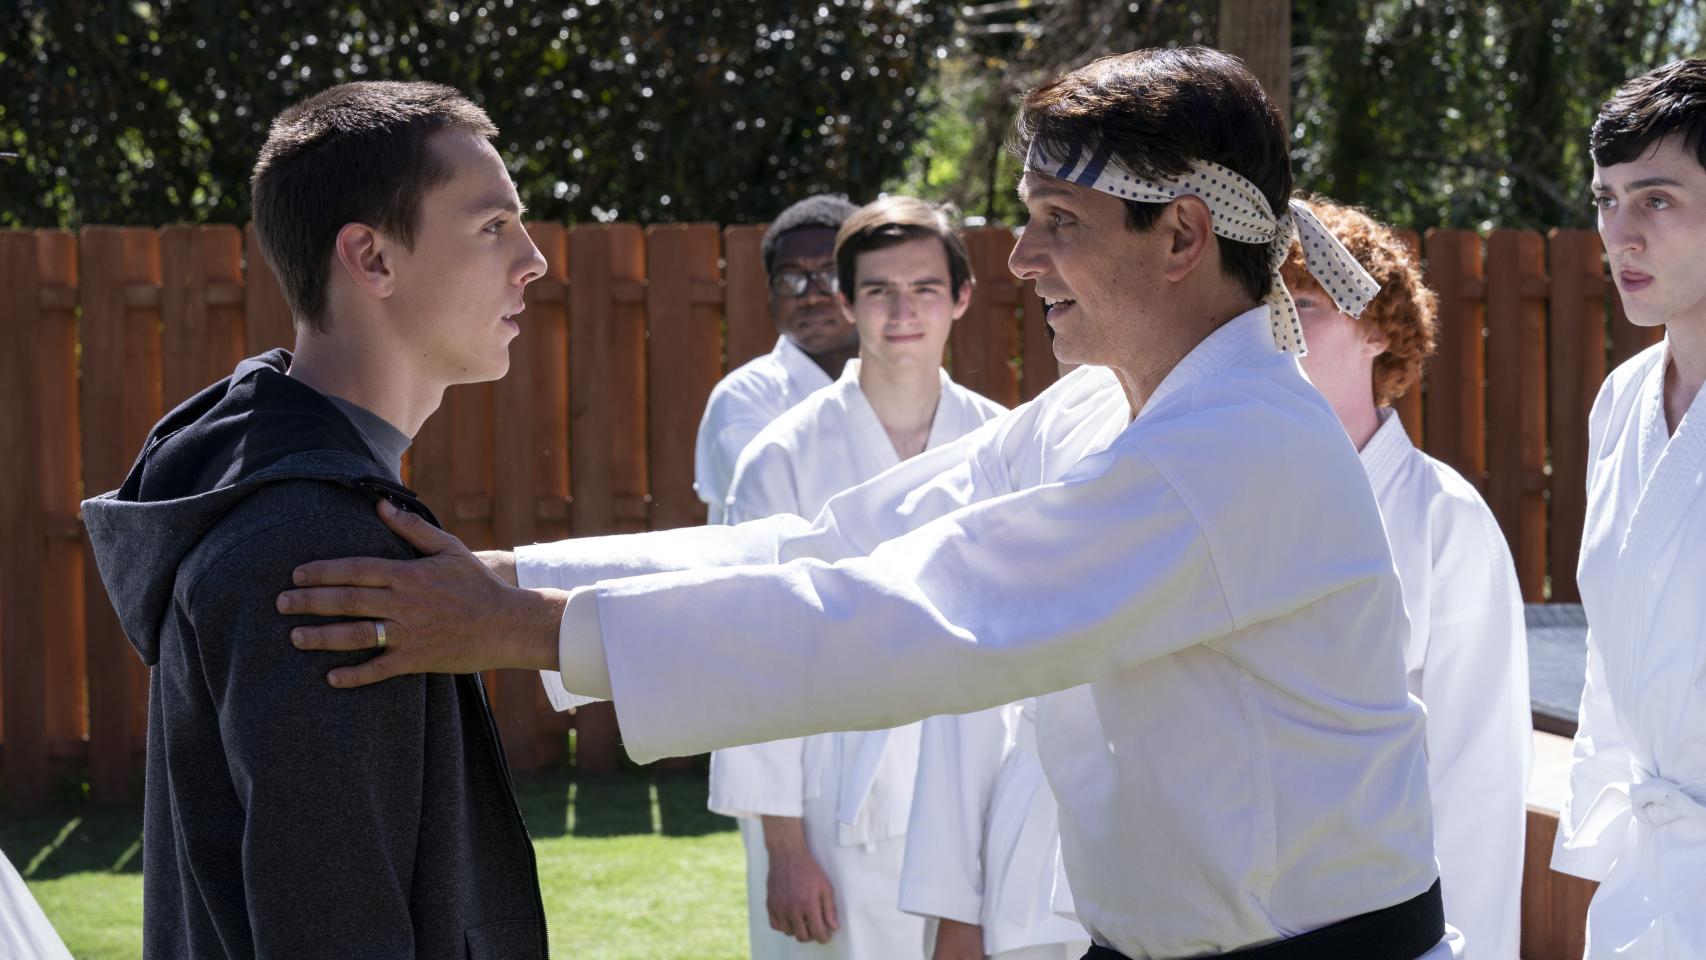 Cobra Kai' Temporada 4 - Fecha de estreno, tráiler y todo lo que sabemos de  la serie de 'Karate Kid' de Netflix